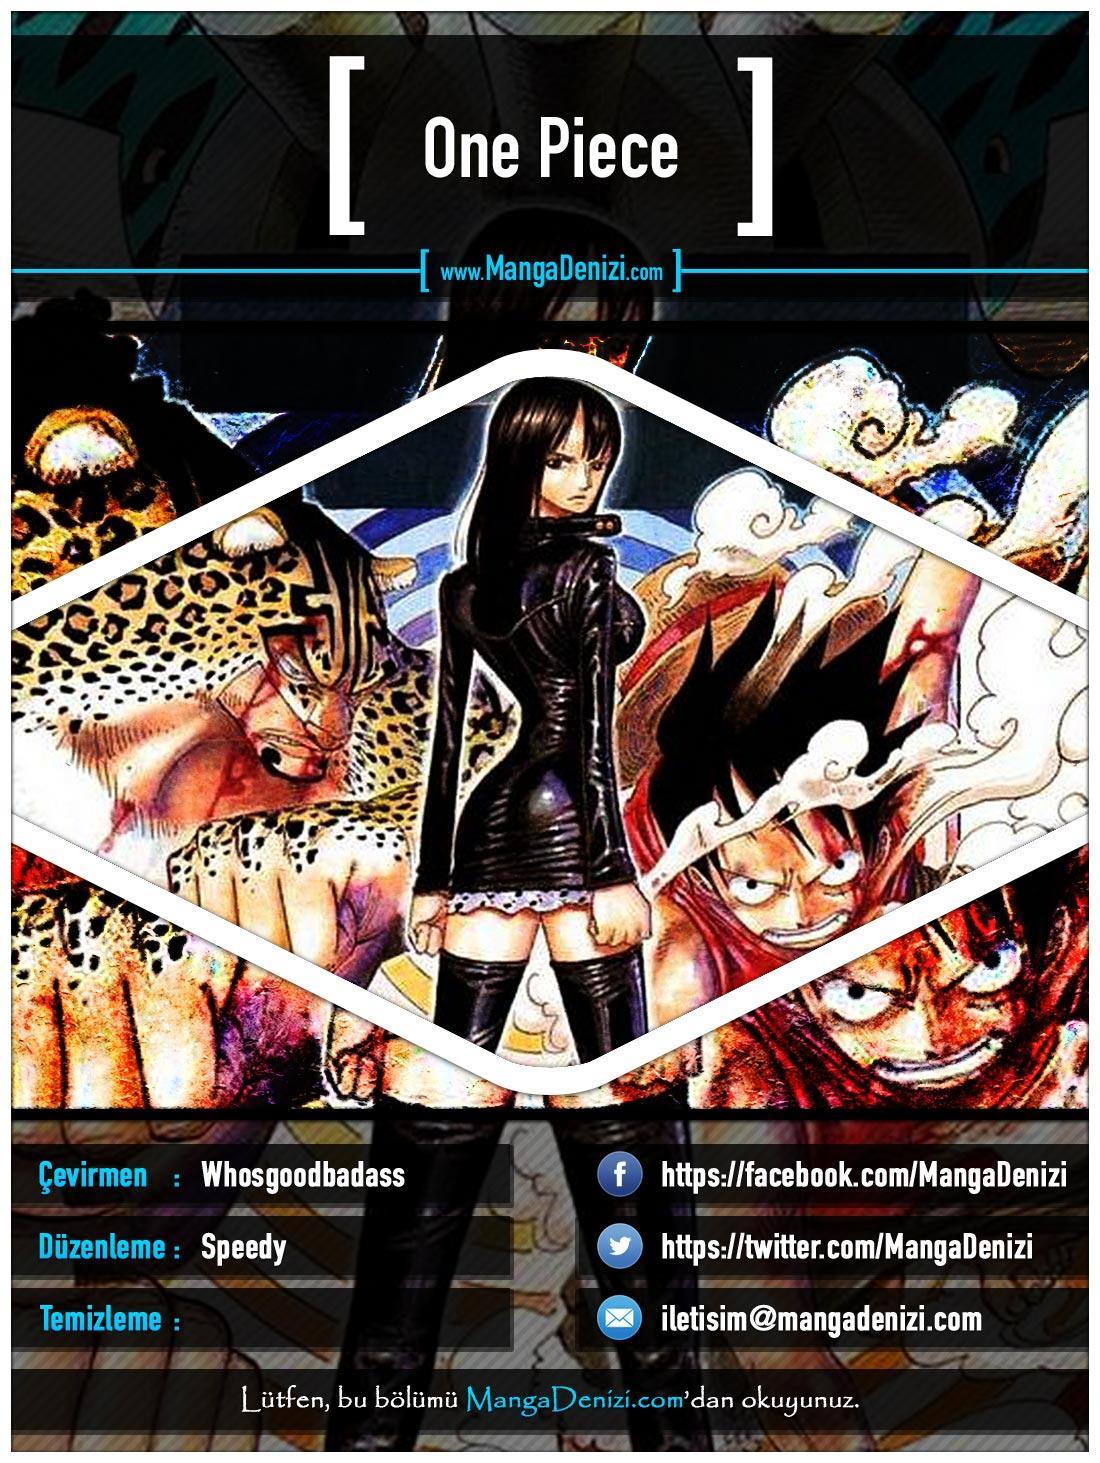 One Piece [Renkli] mangasının 0340 bölümünün 1. sayfasını okuyorsunuz.